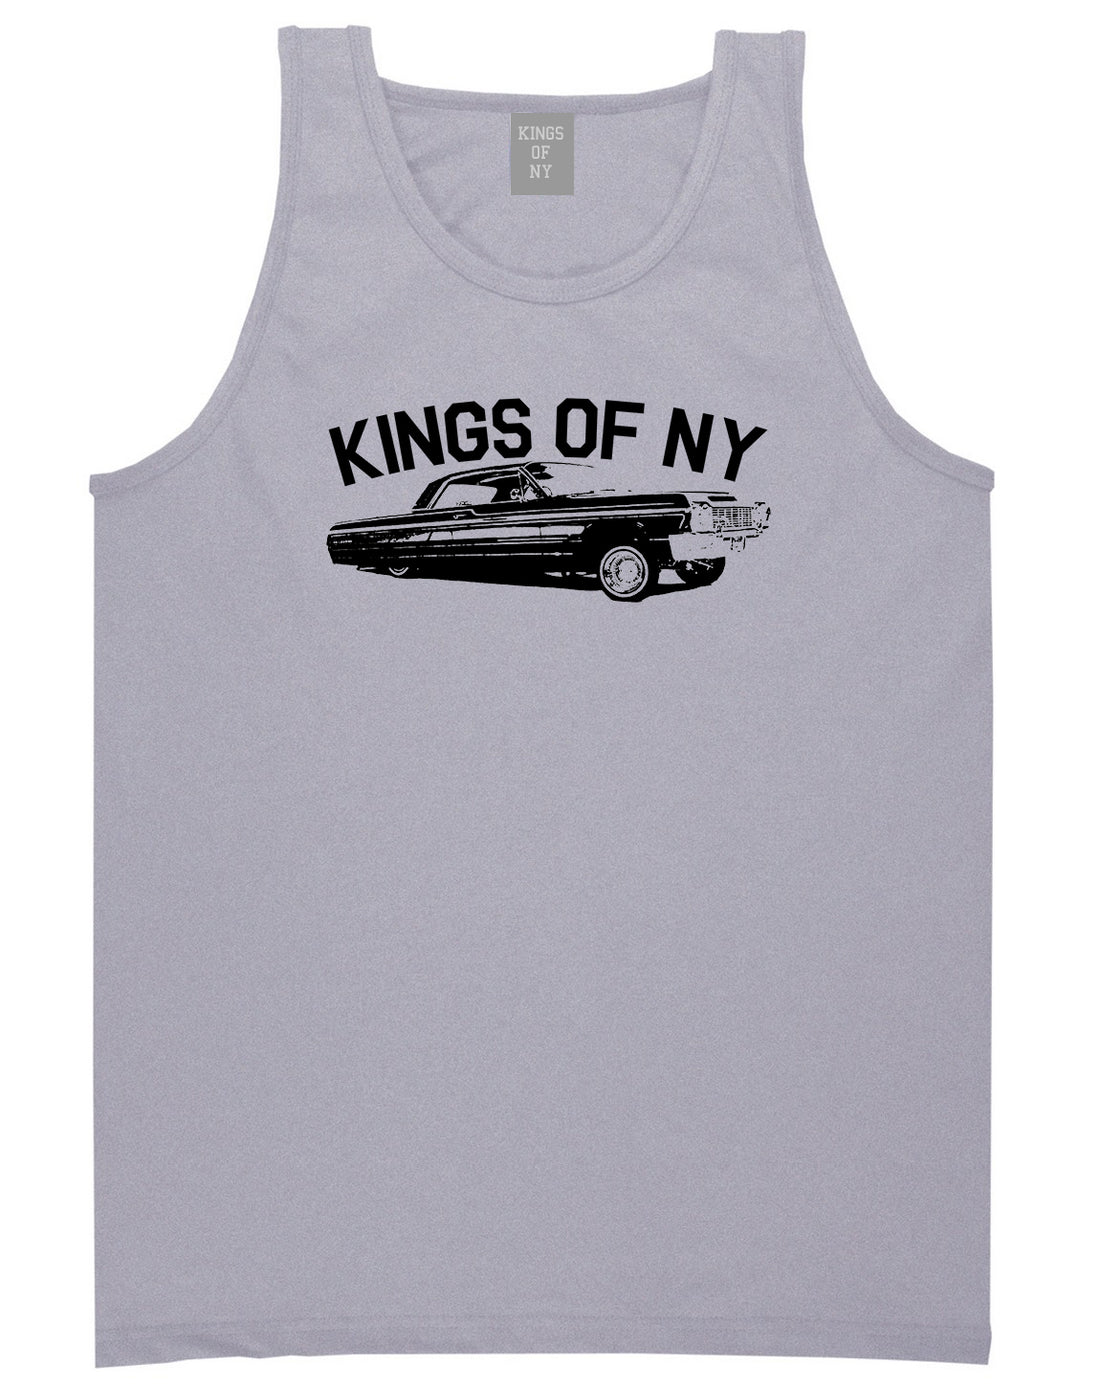 Kings Of NY Lowrider Mens Tank Top Shirt Grey by Kings Of NY